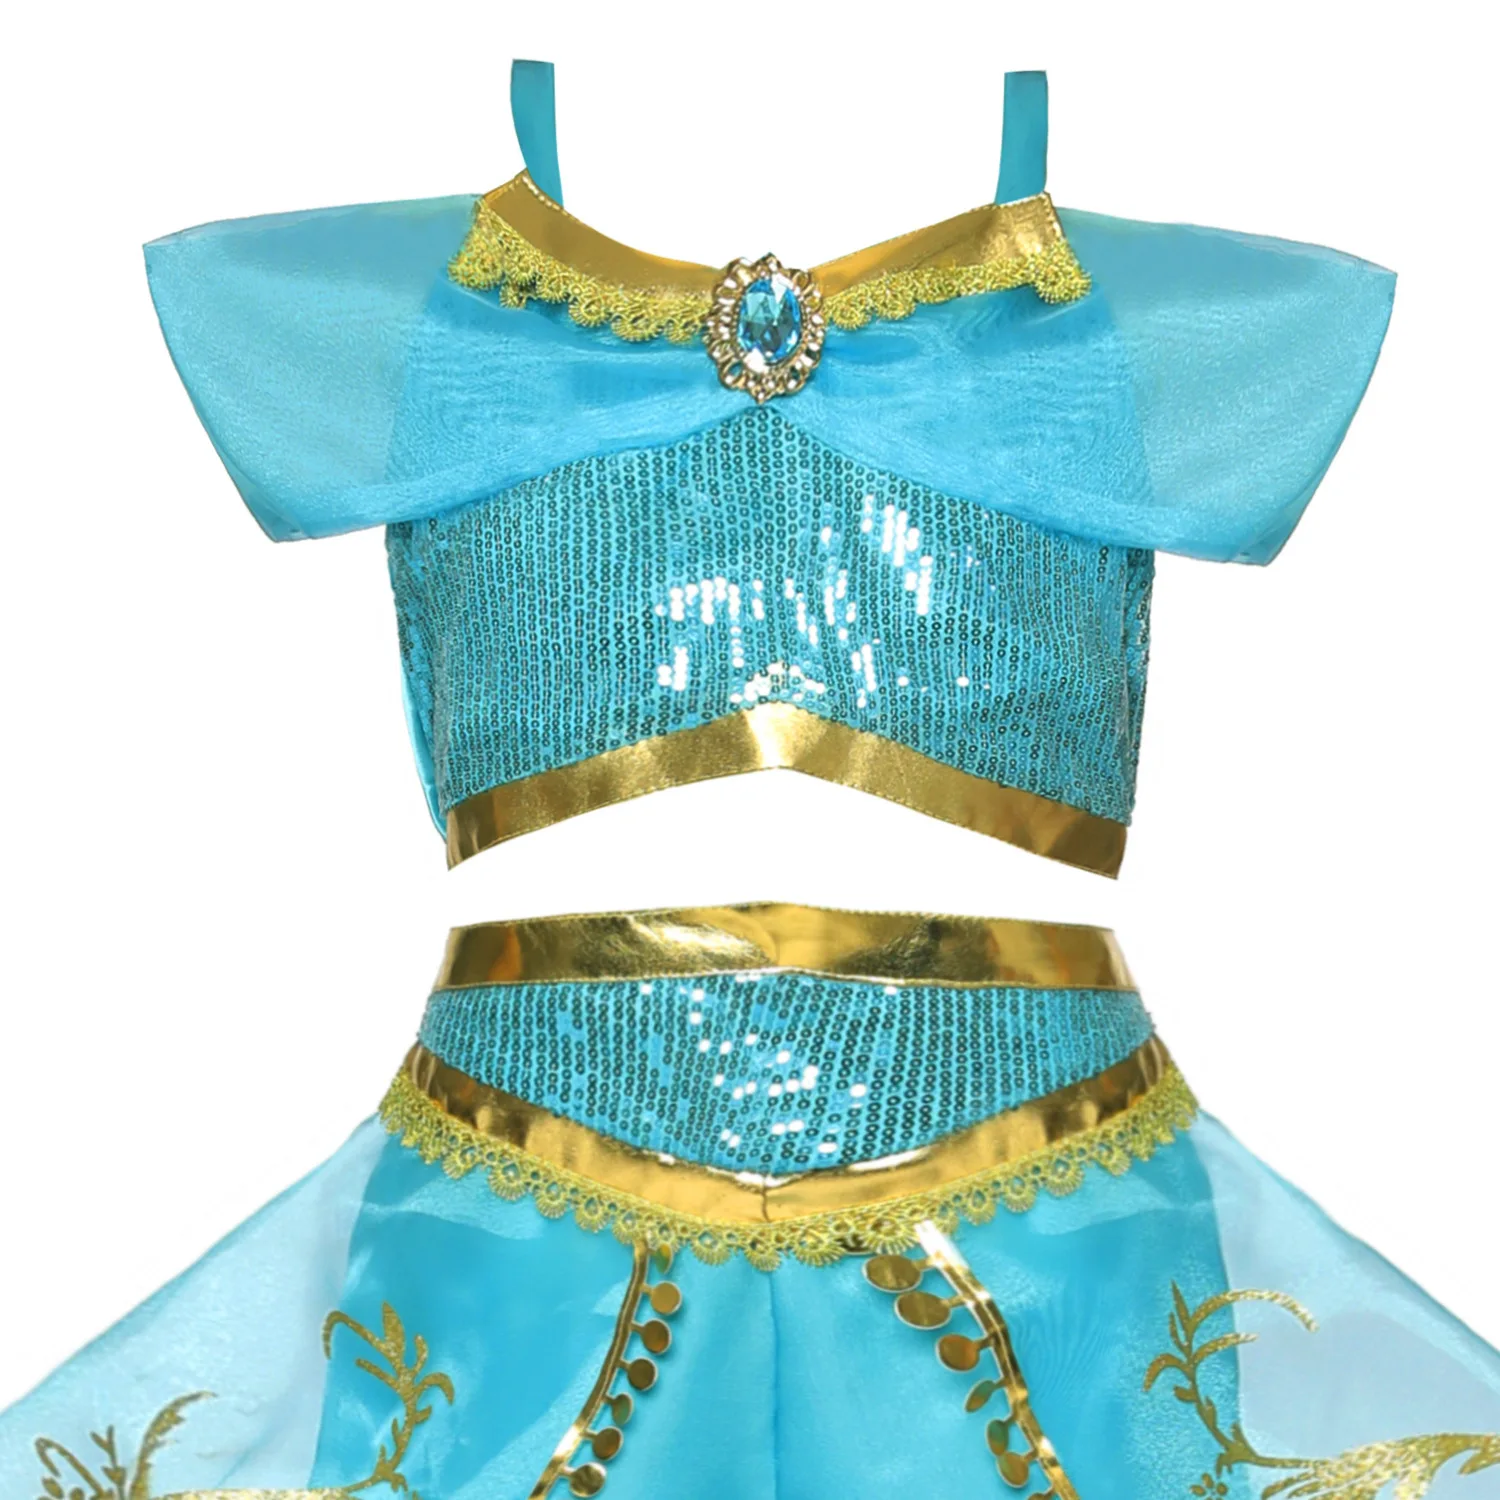 Рождественская одежда; платье для девочек; костюм принцессы жасмин для выступлений; маскарадный костюм из фильма «Аладдин»; комплекты с накидкой из тюля с блестками